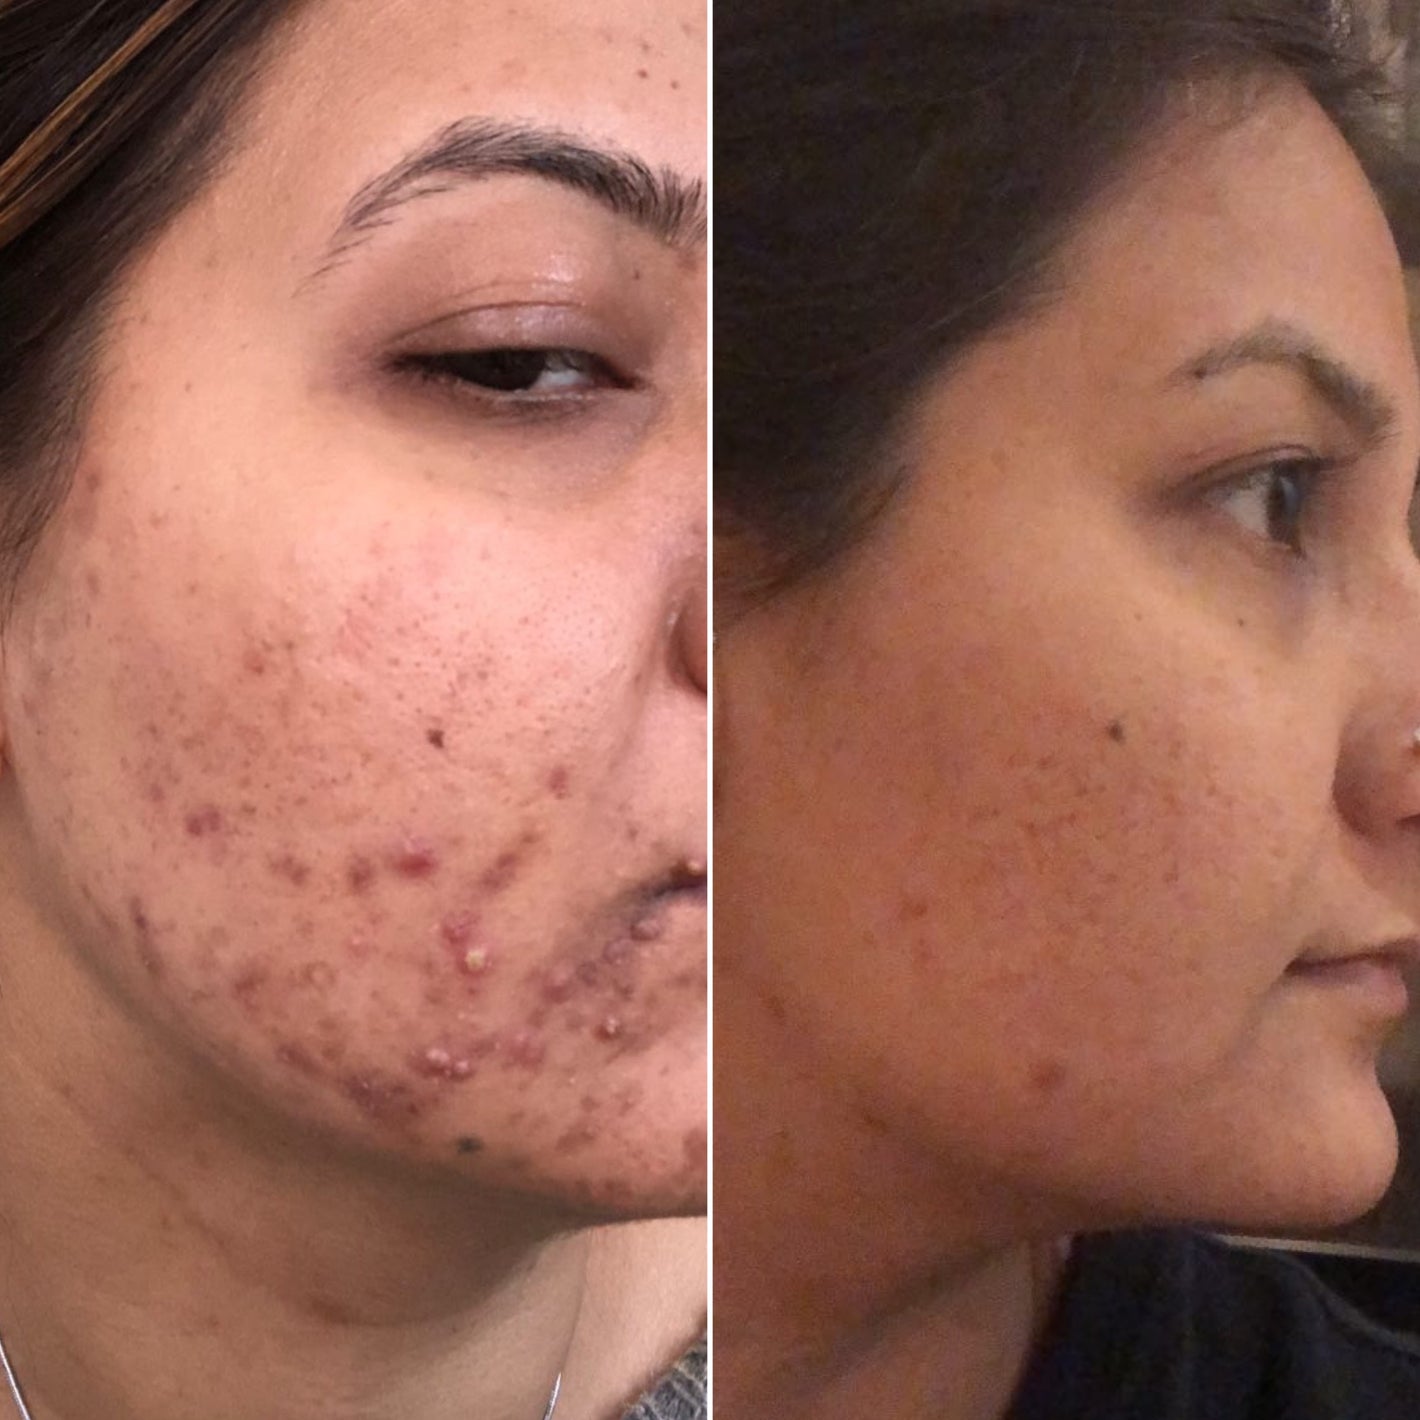 Before & After Acne Treatment in Montreal - Dermature Esthetic Clinic Traitement de l'acné à Montréal - Clinique esthétique Dermature